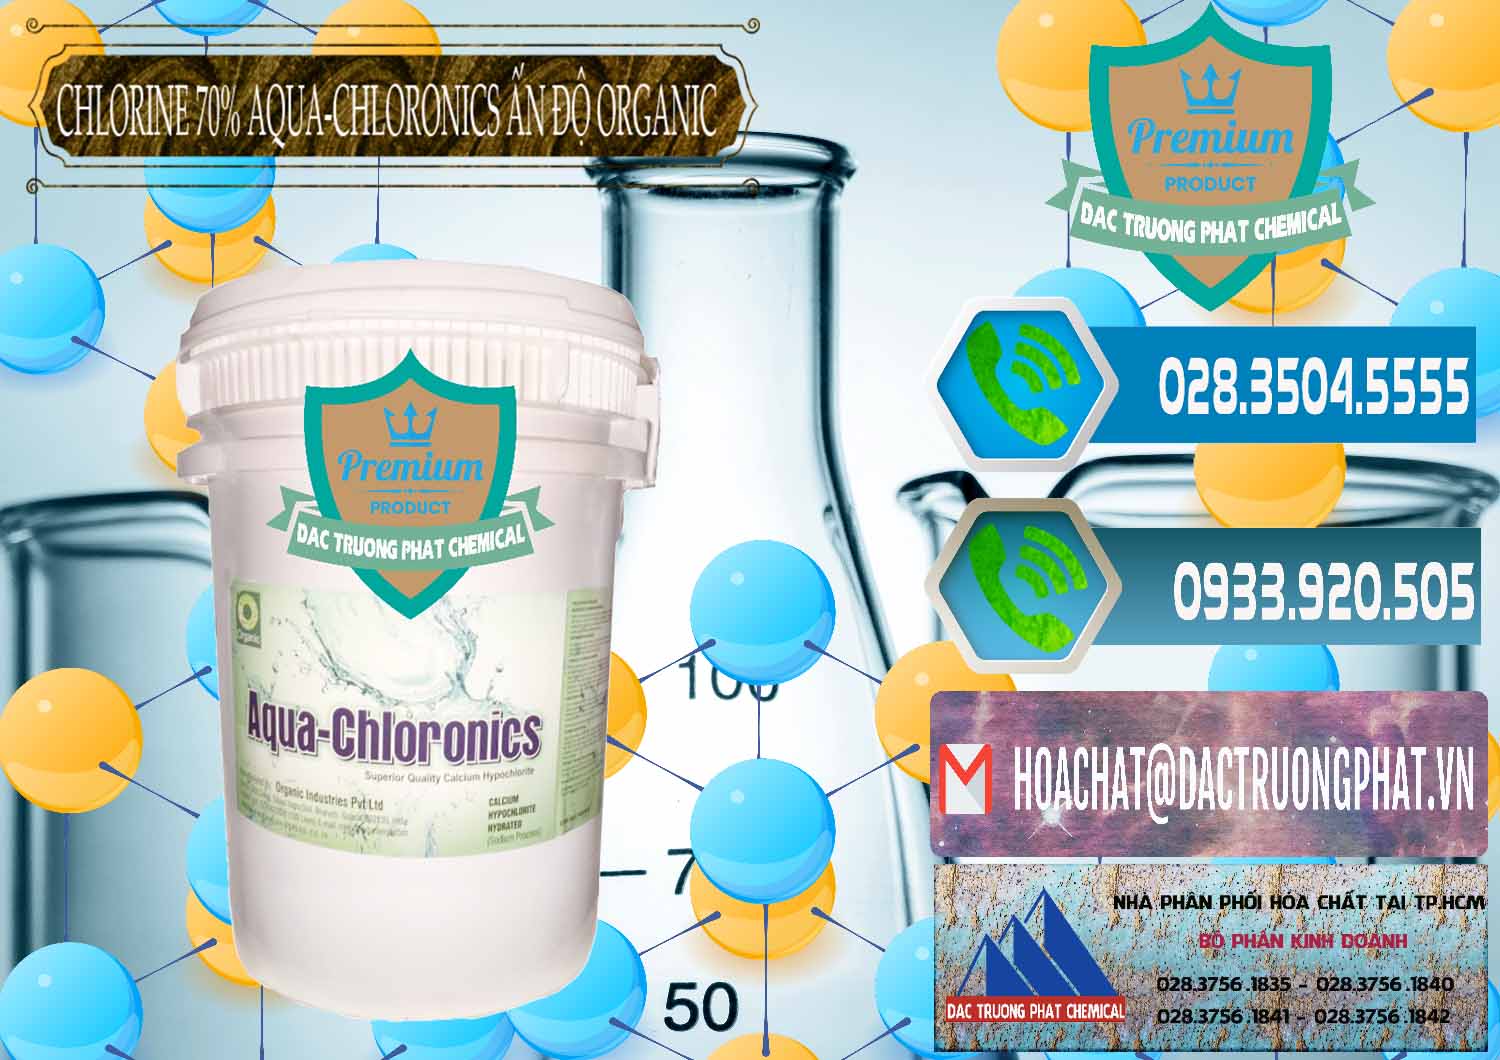 Chuyên cung cấp và bán Chlorine – Clorin 70% Aqua-Chloronics Ấn Độ Organic India - 0211 - Công ty bán - phân phối hóa chất tại TP.HCM - congtyhoachat.net